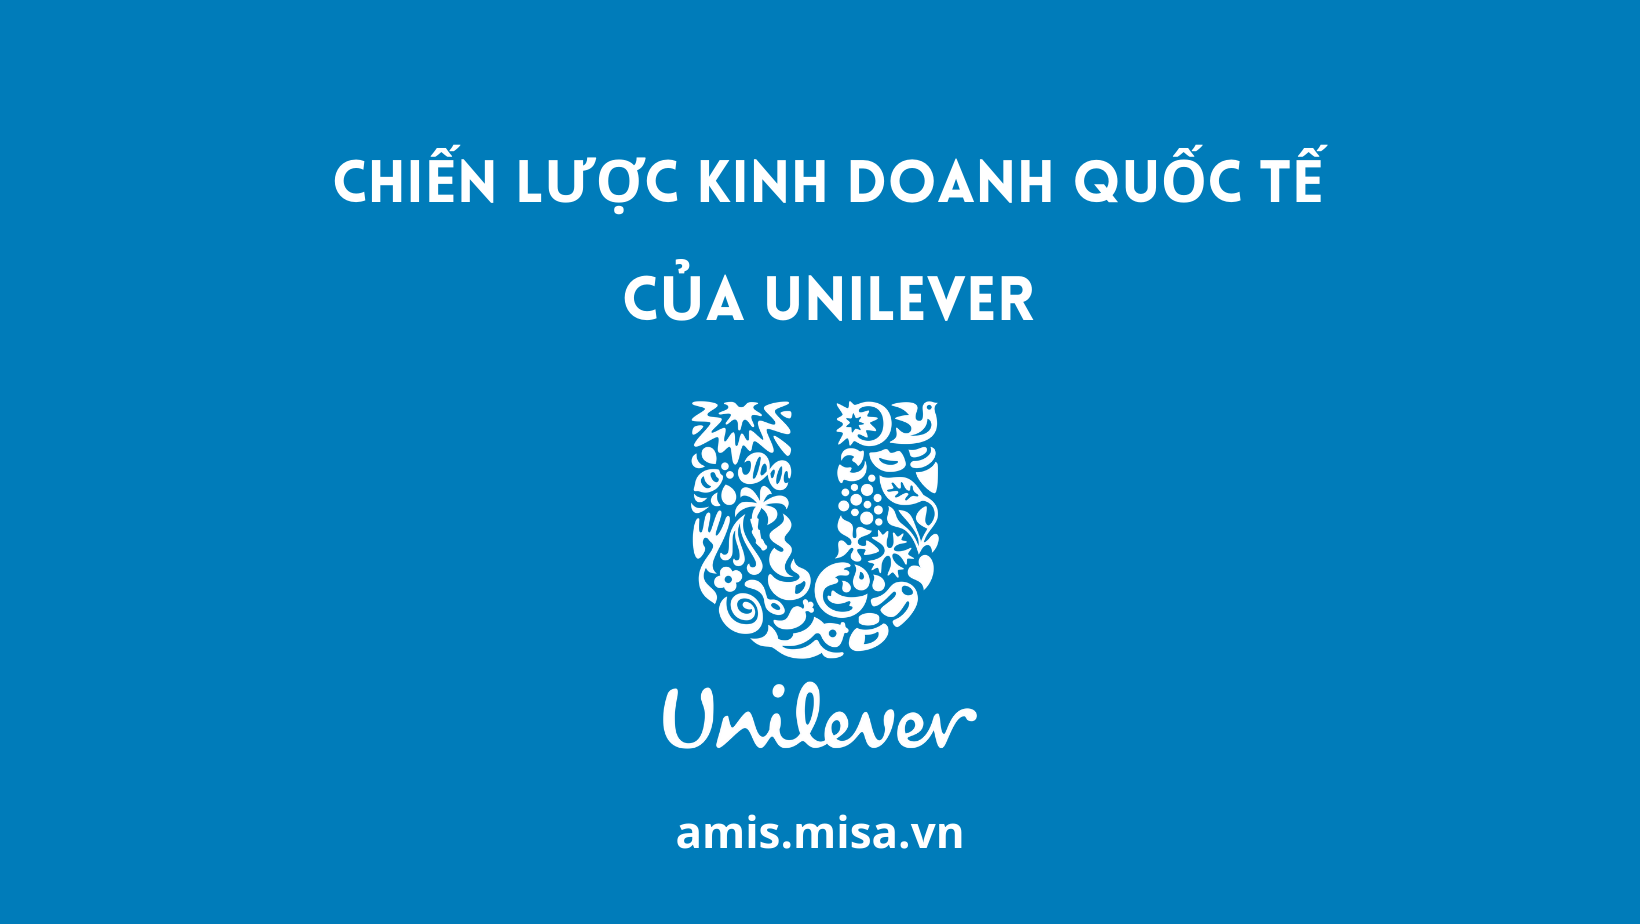 chiến lược kinh doanh quốc tế của unilever